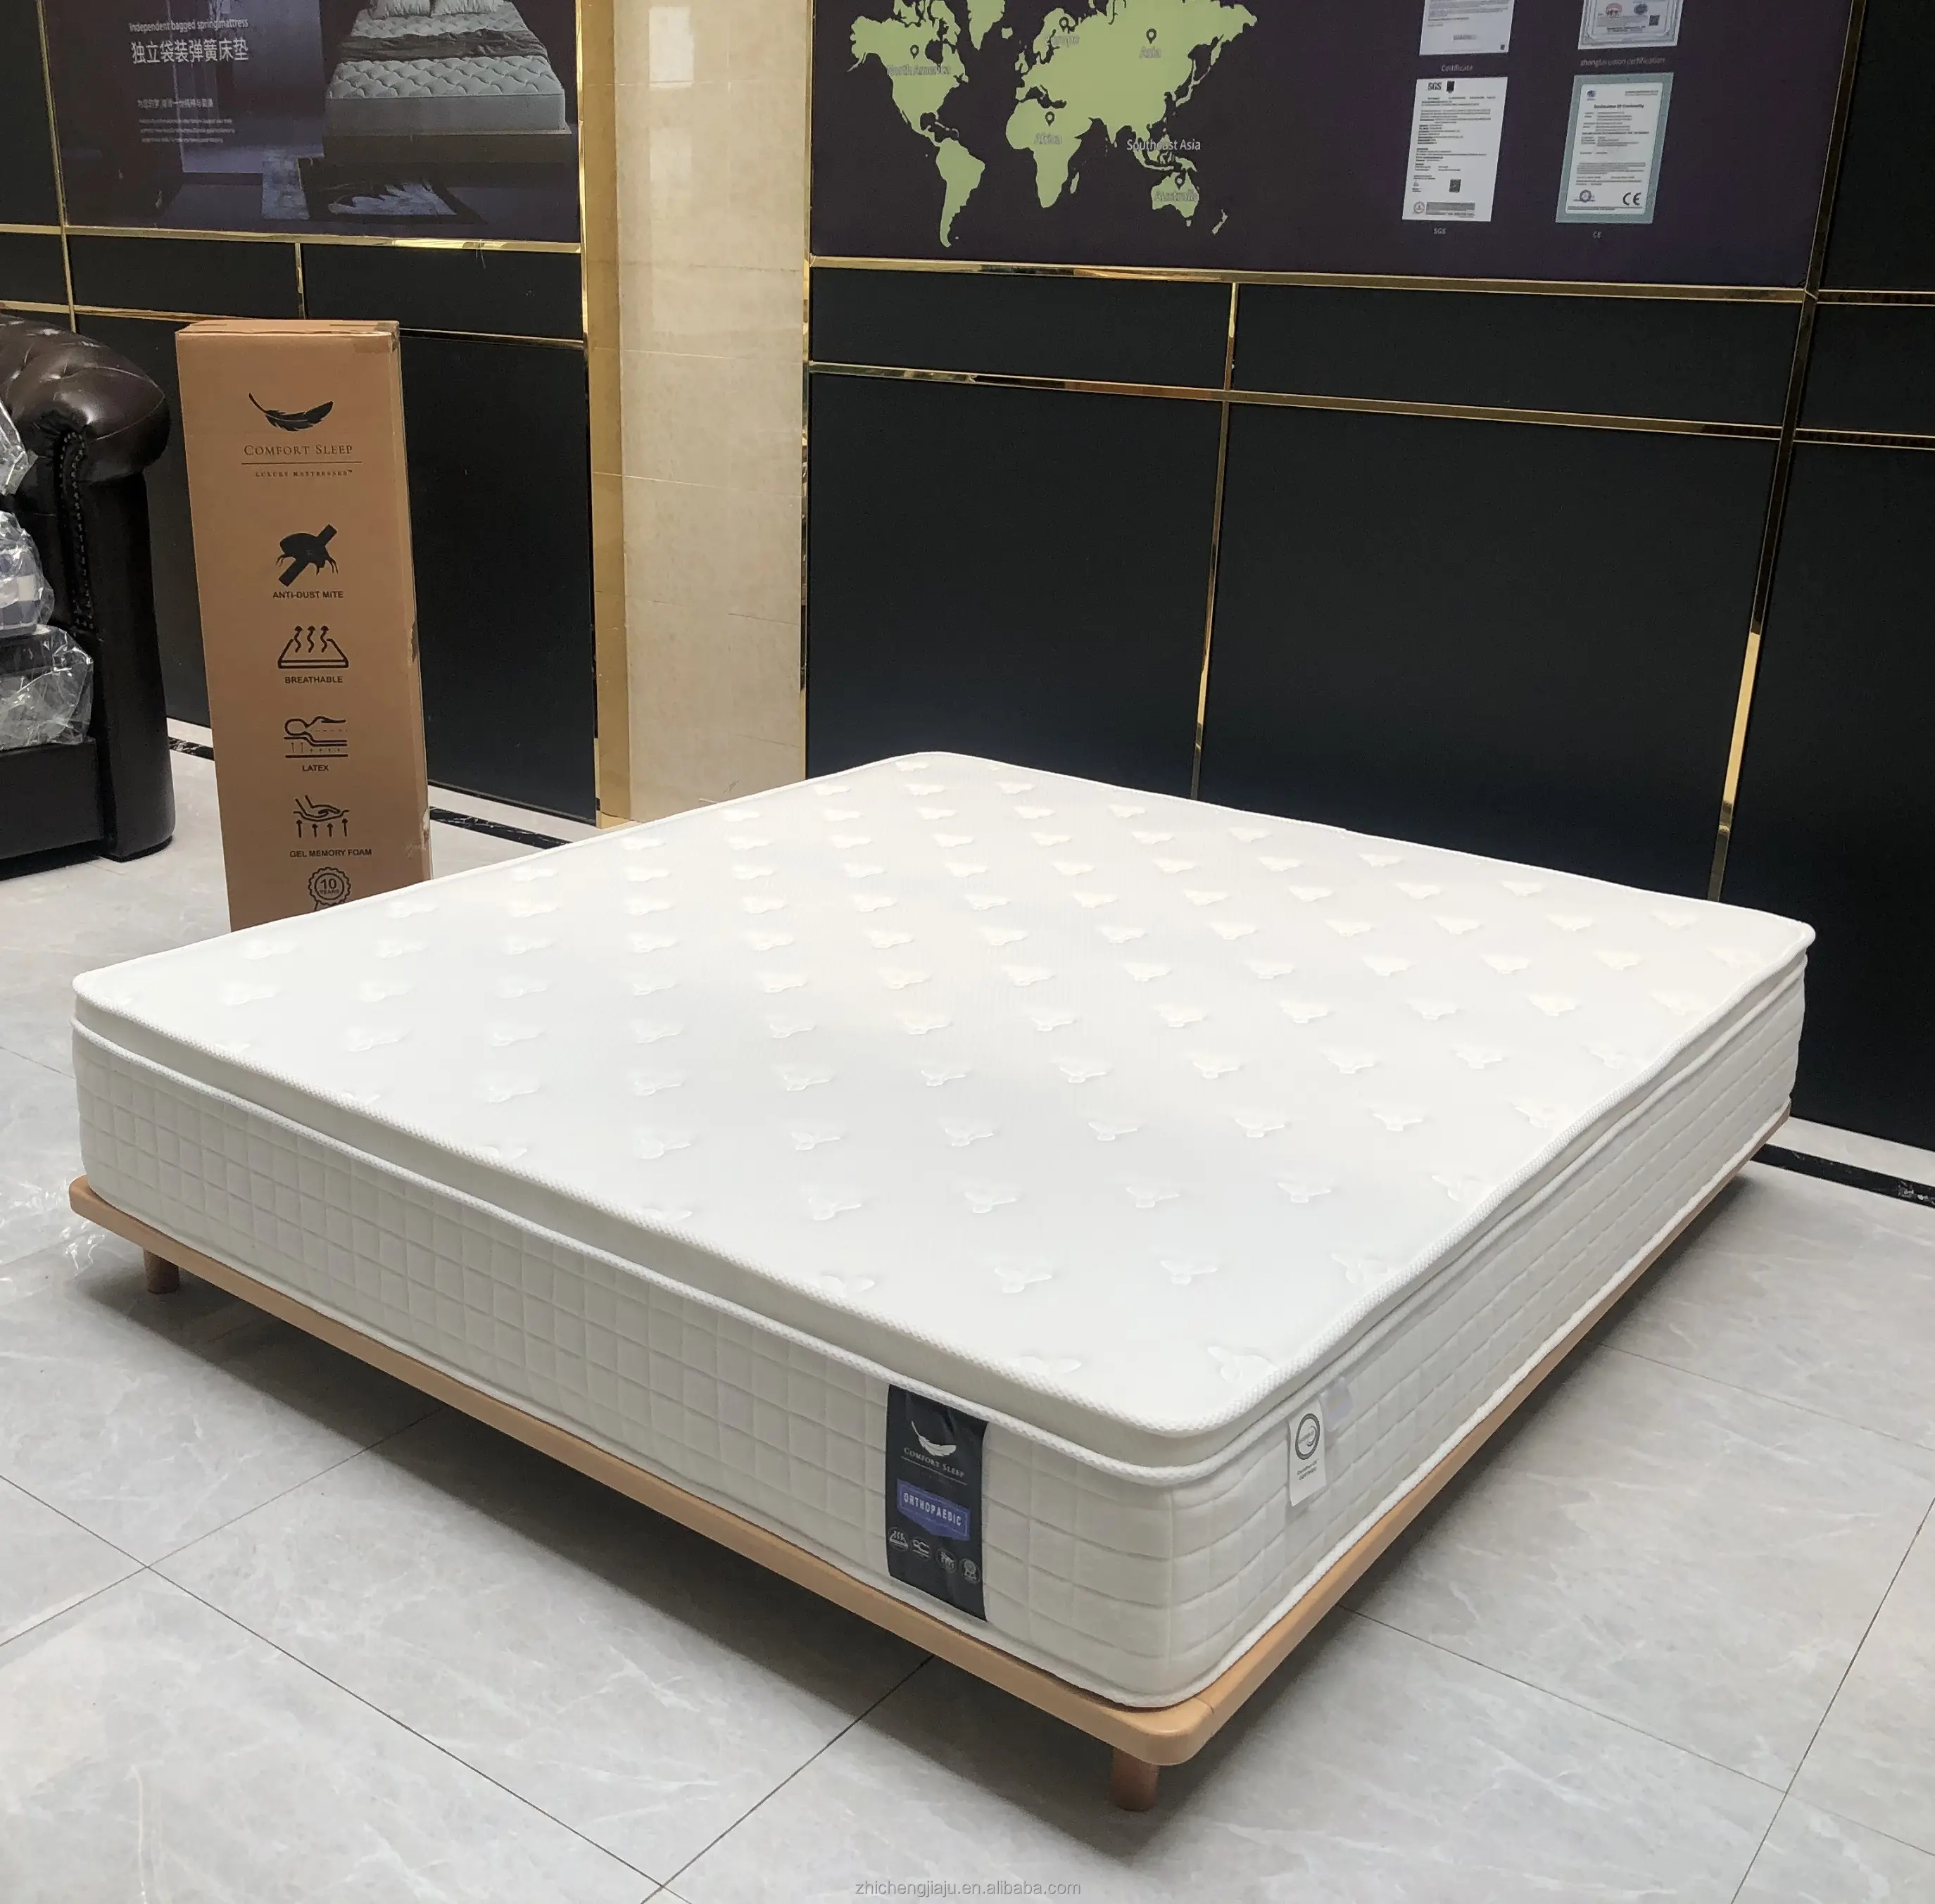 Euro Top materasso a molle insacchettate Gel di lattice Memory Foam materasso ibrido Queen Size singolo tipo di lusso materasso per dormire da sogno